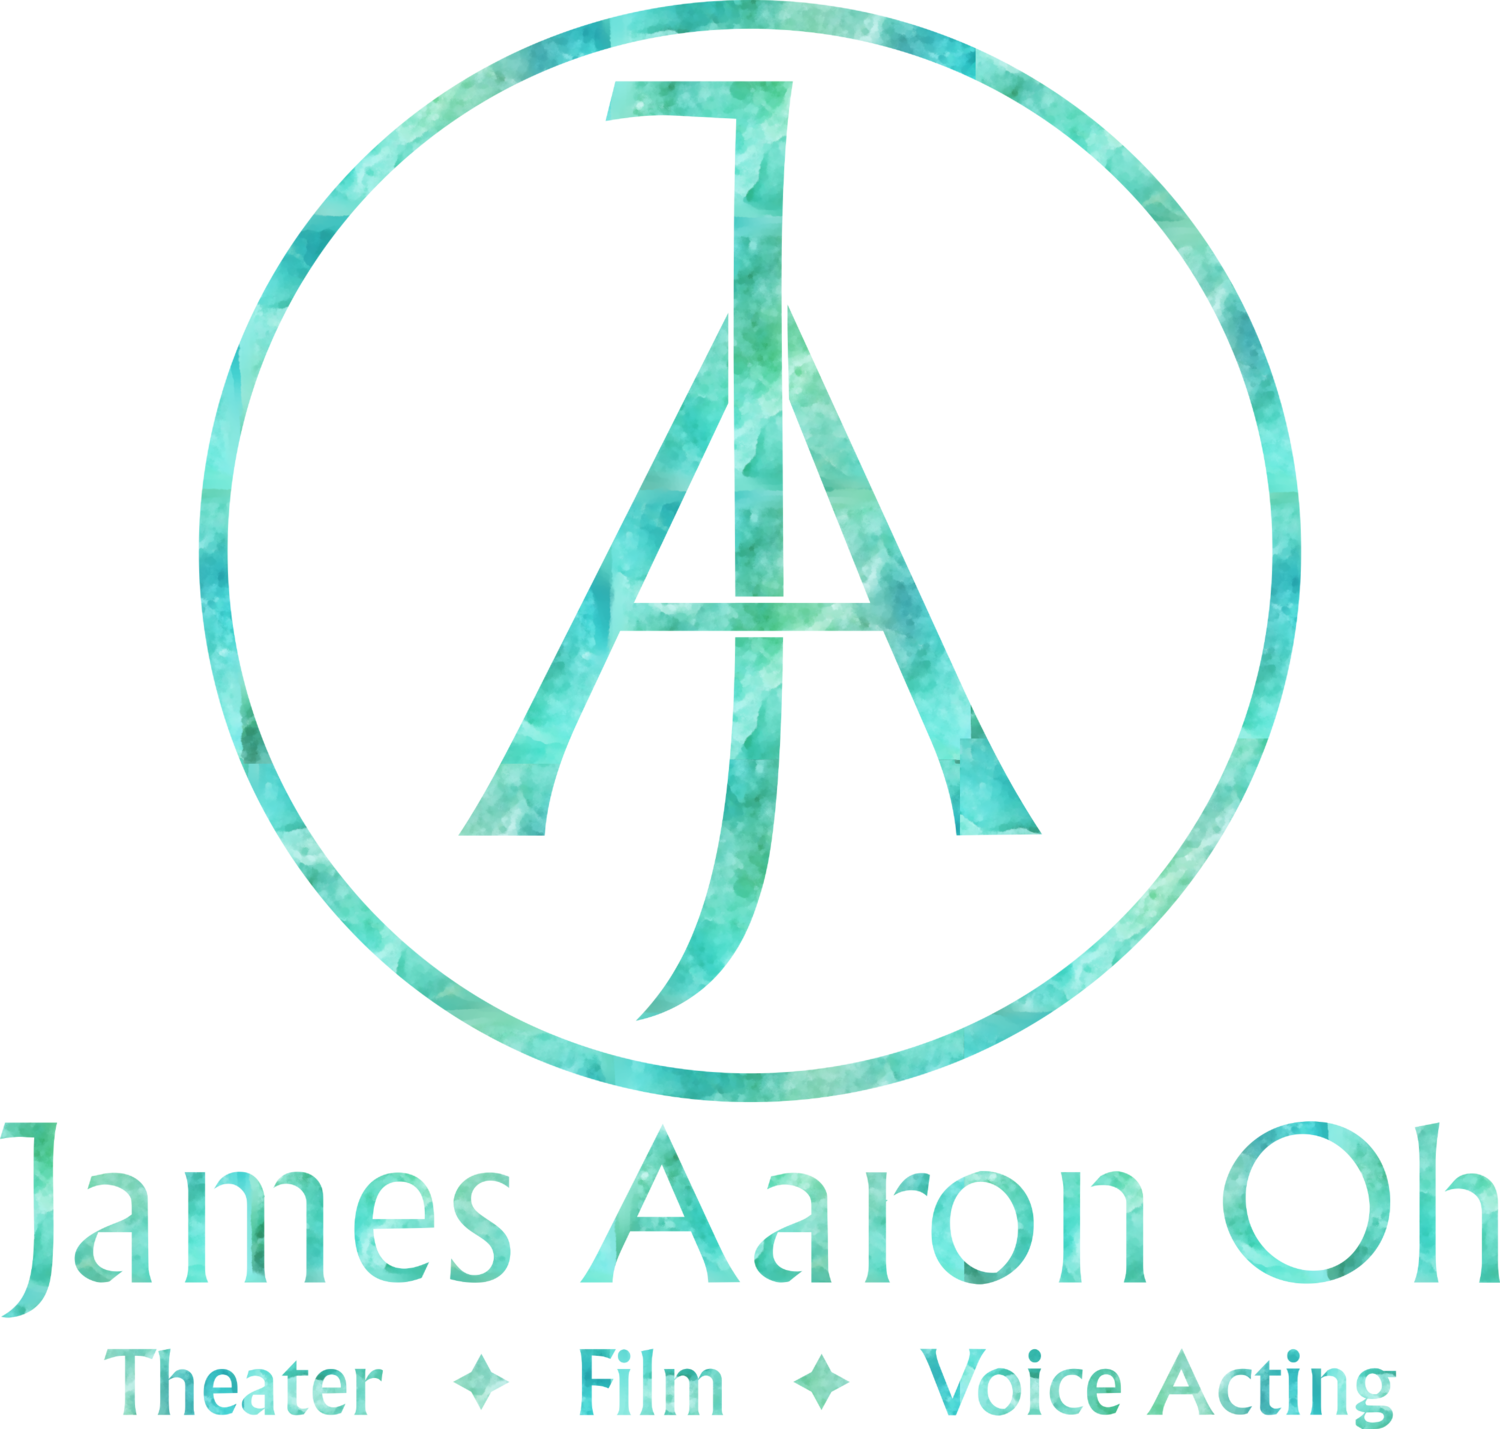 James Aaron Oh